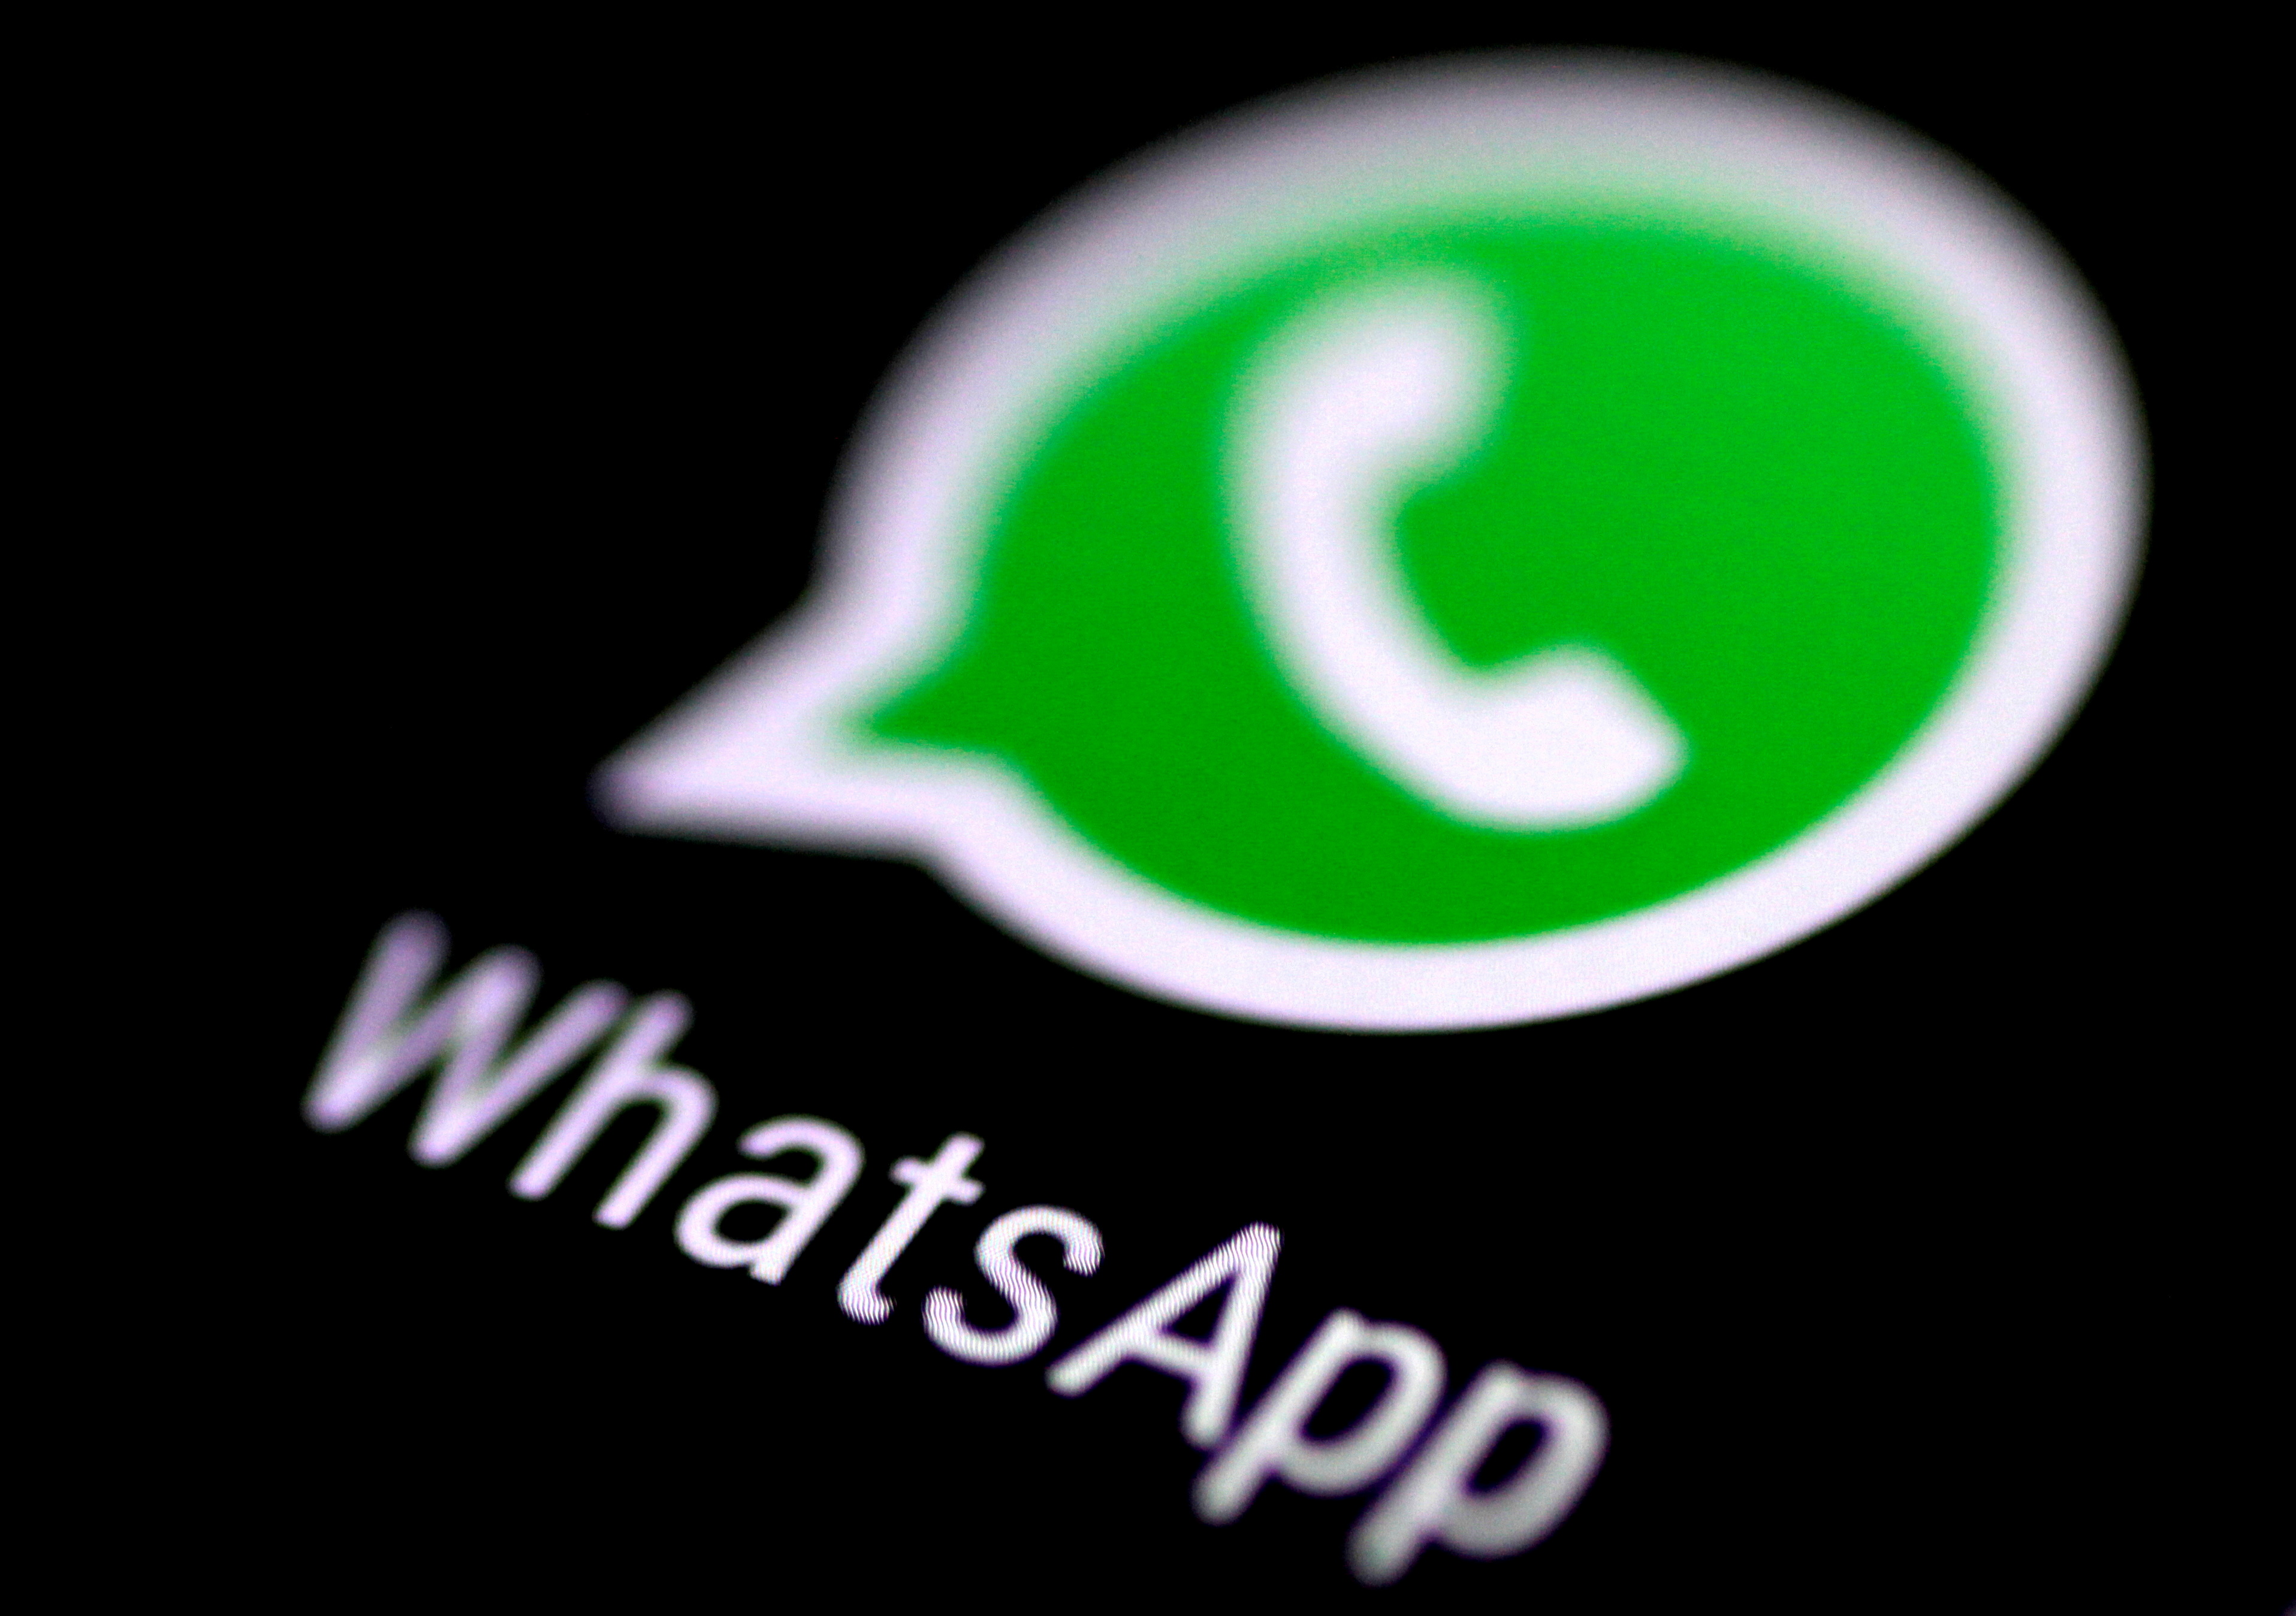 La Unin Europea abandona WhatsApp y se pasa a Signal por seguridad